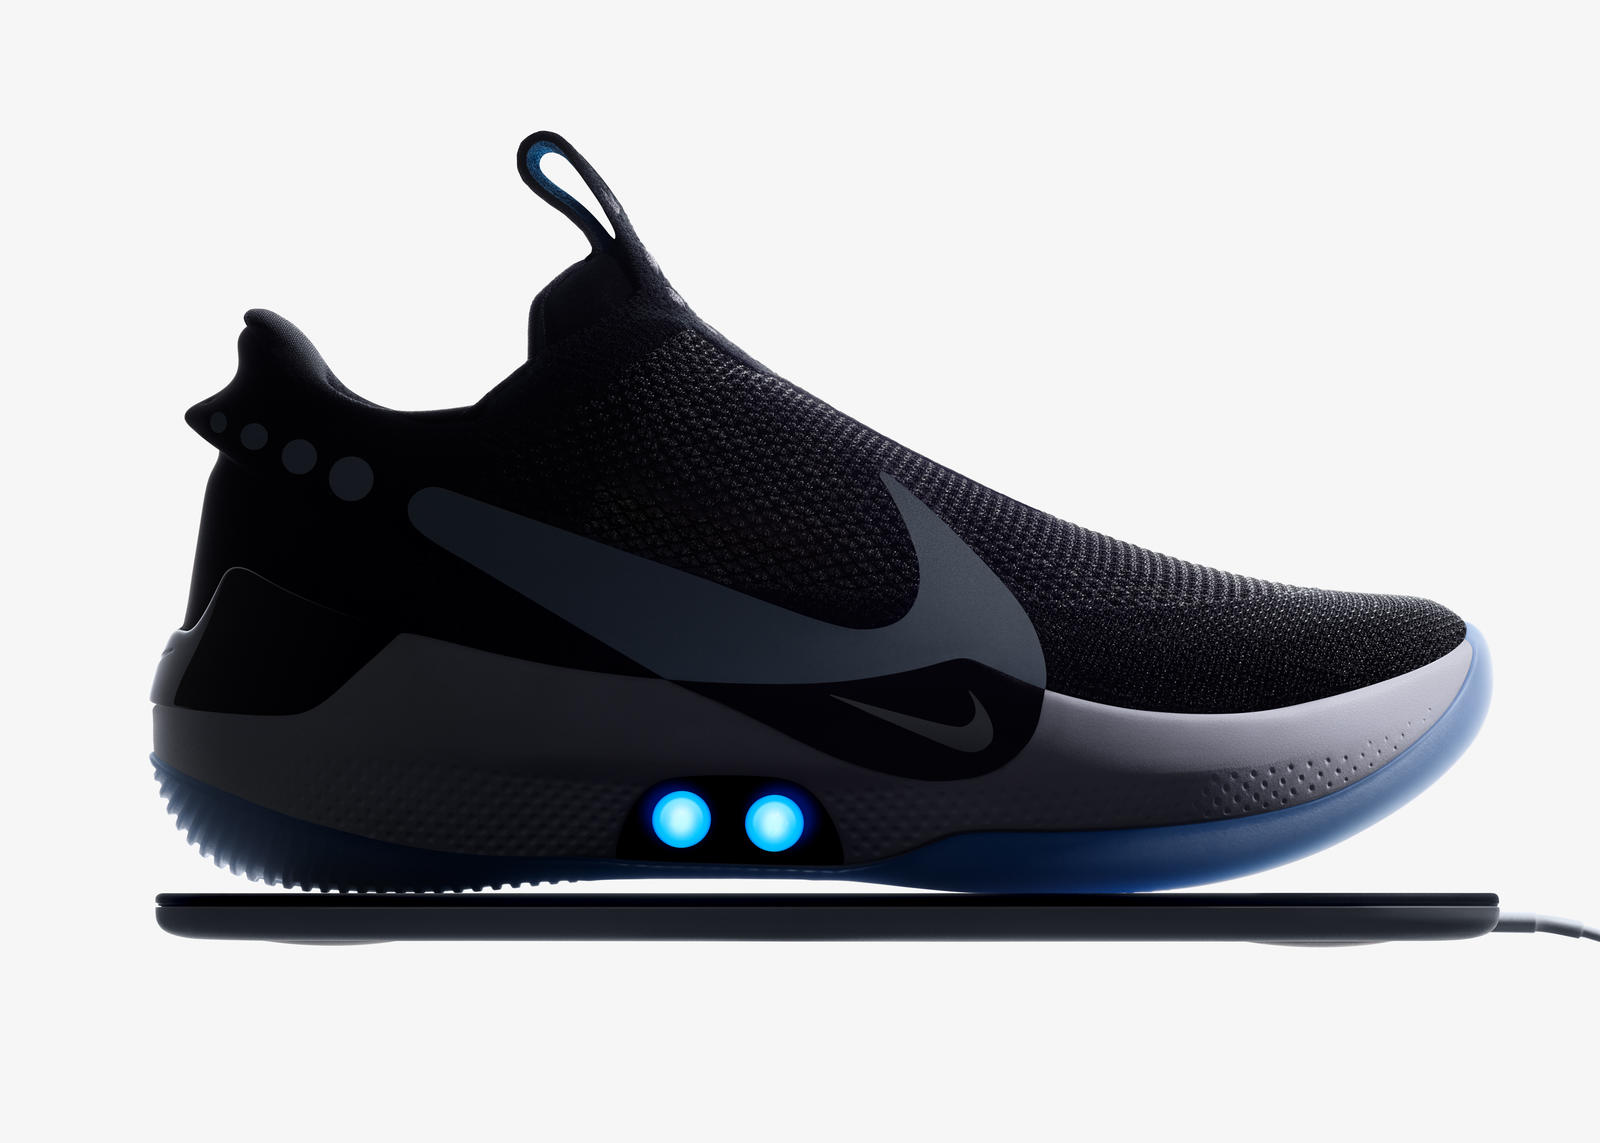 Le futur de la chaussure selon Nike une basket connectée, auto